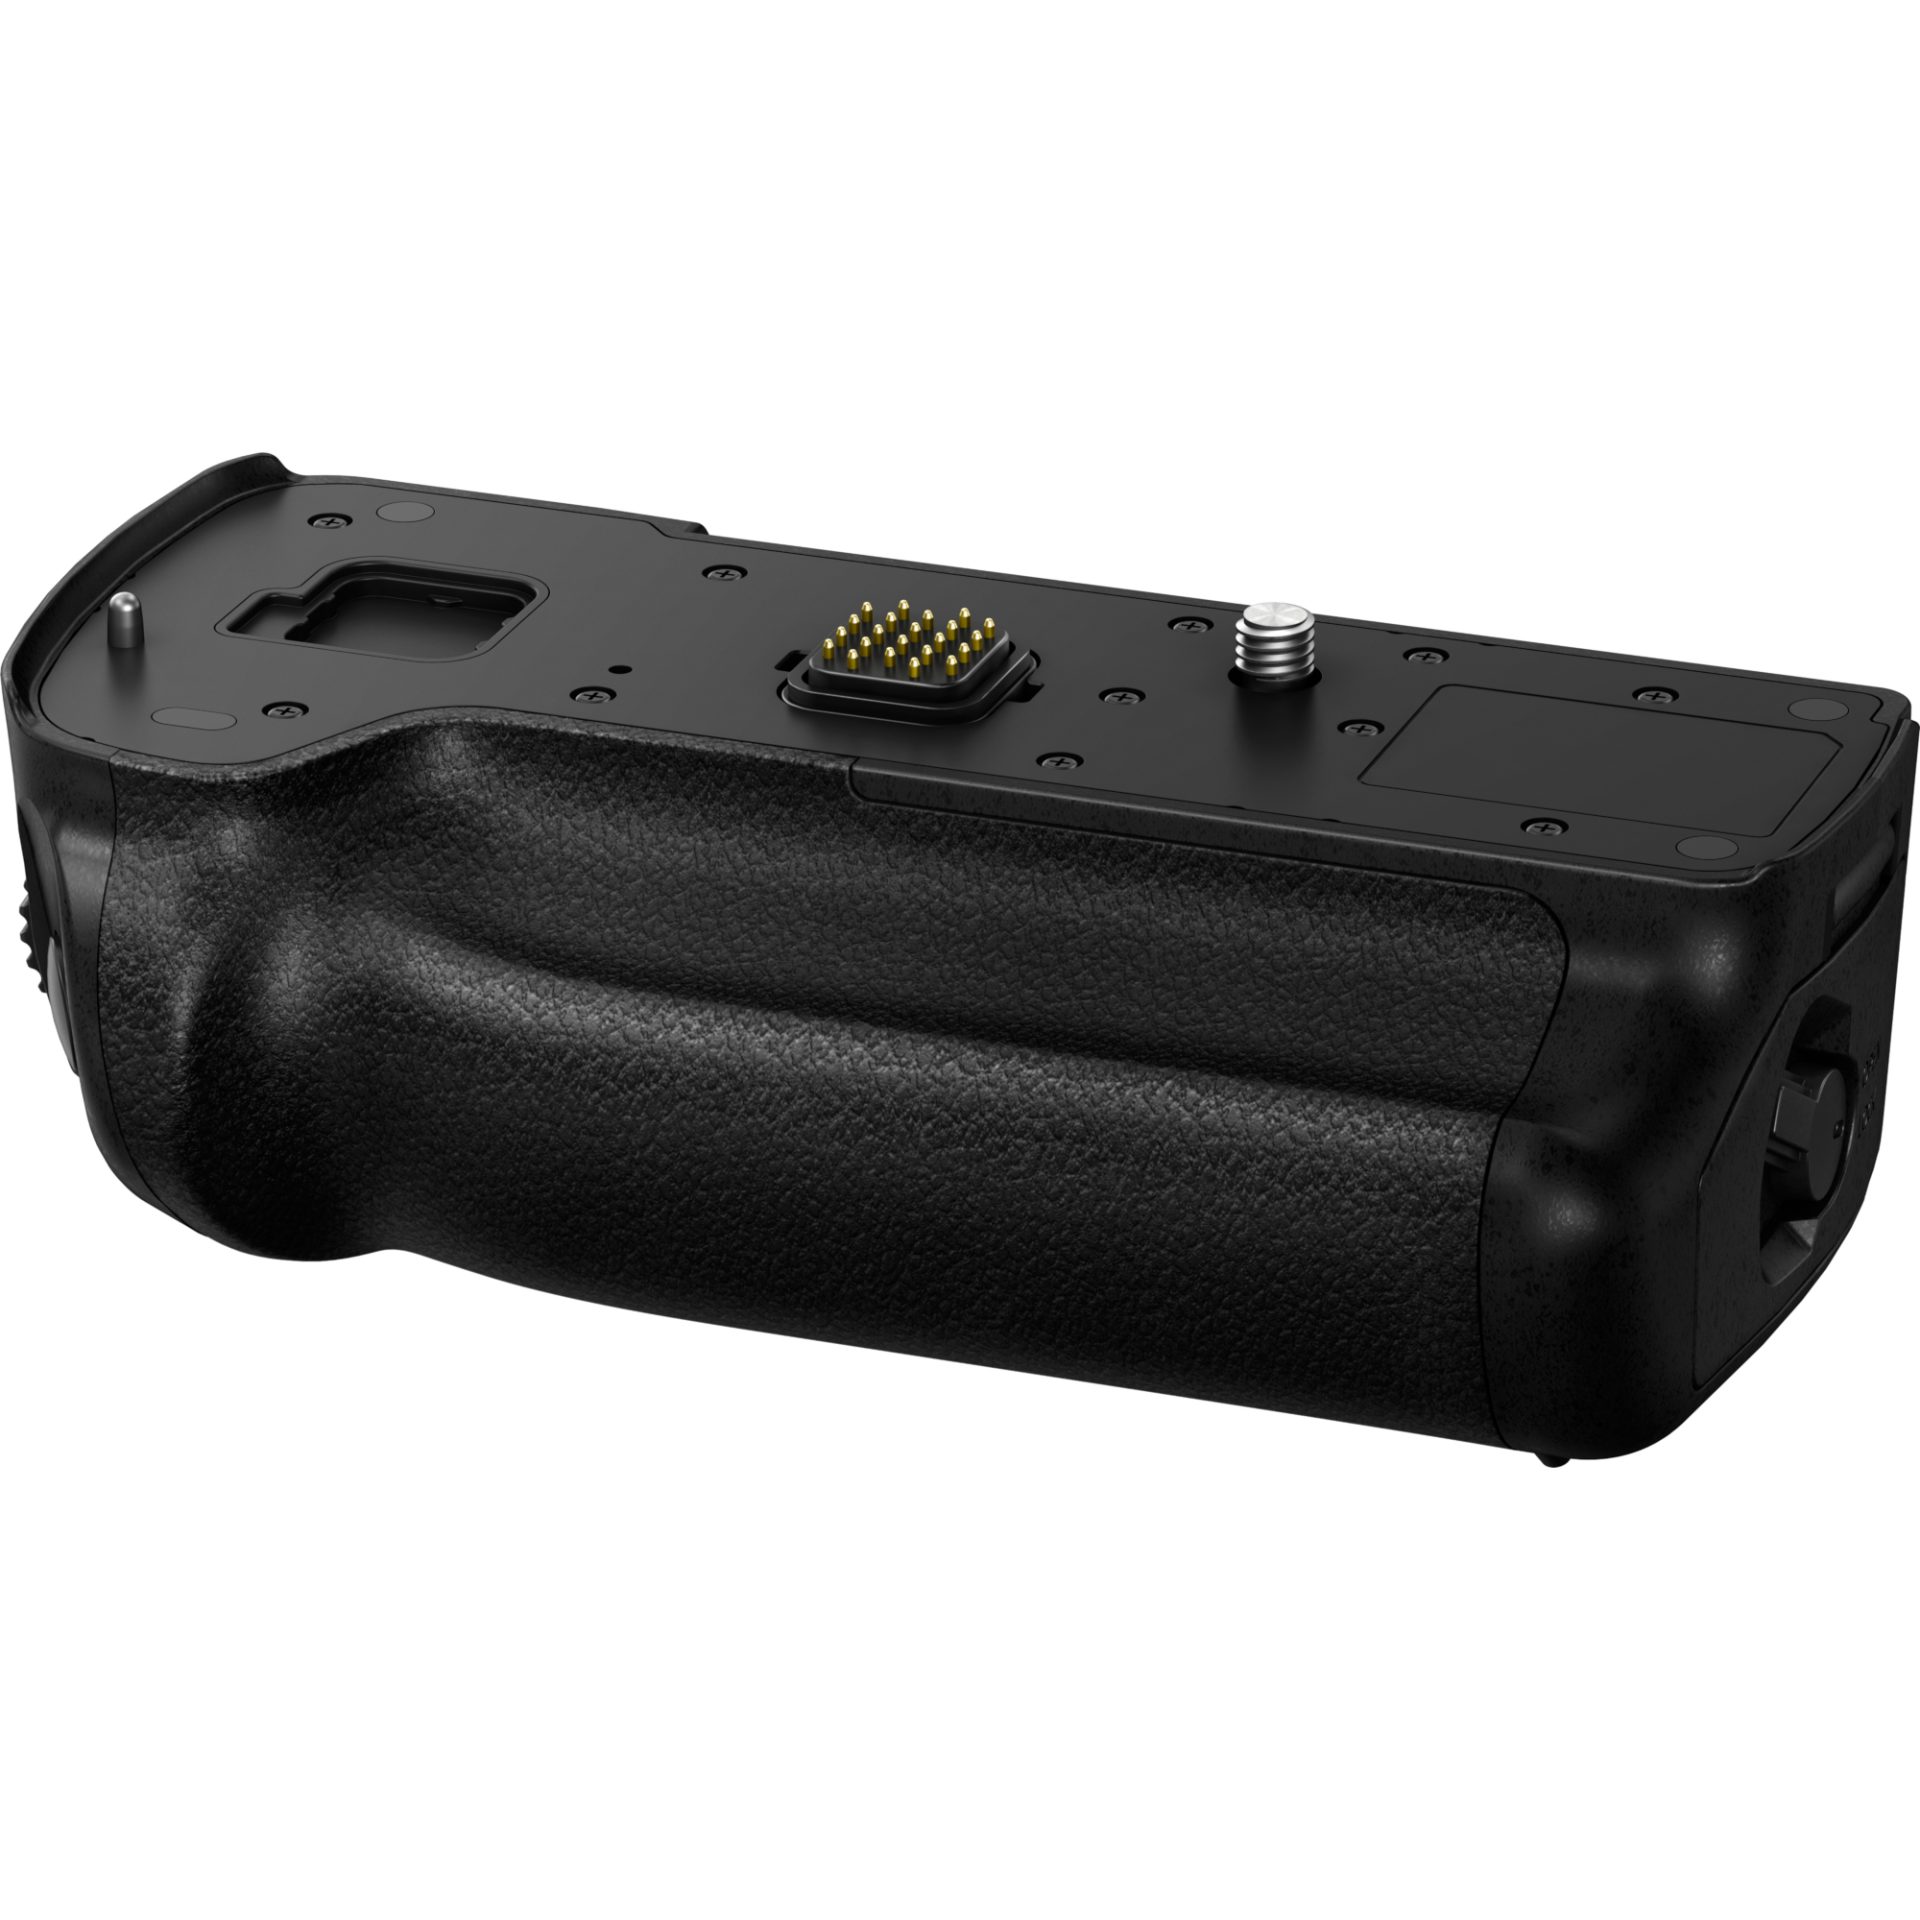 Panasonic DMW-BGGH5 DC-GH5 battery grip (prodlužuje výdrž na baterii, odolnost proti stříkající vodě a prachu, pohodlné ovládání), černá